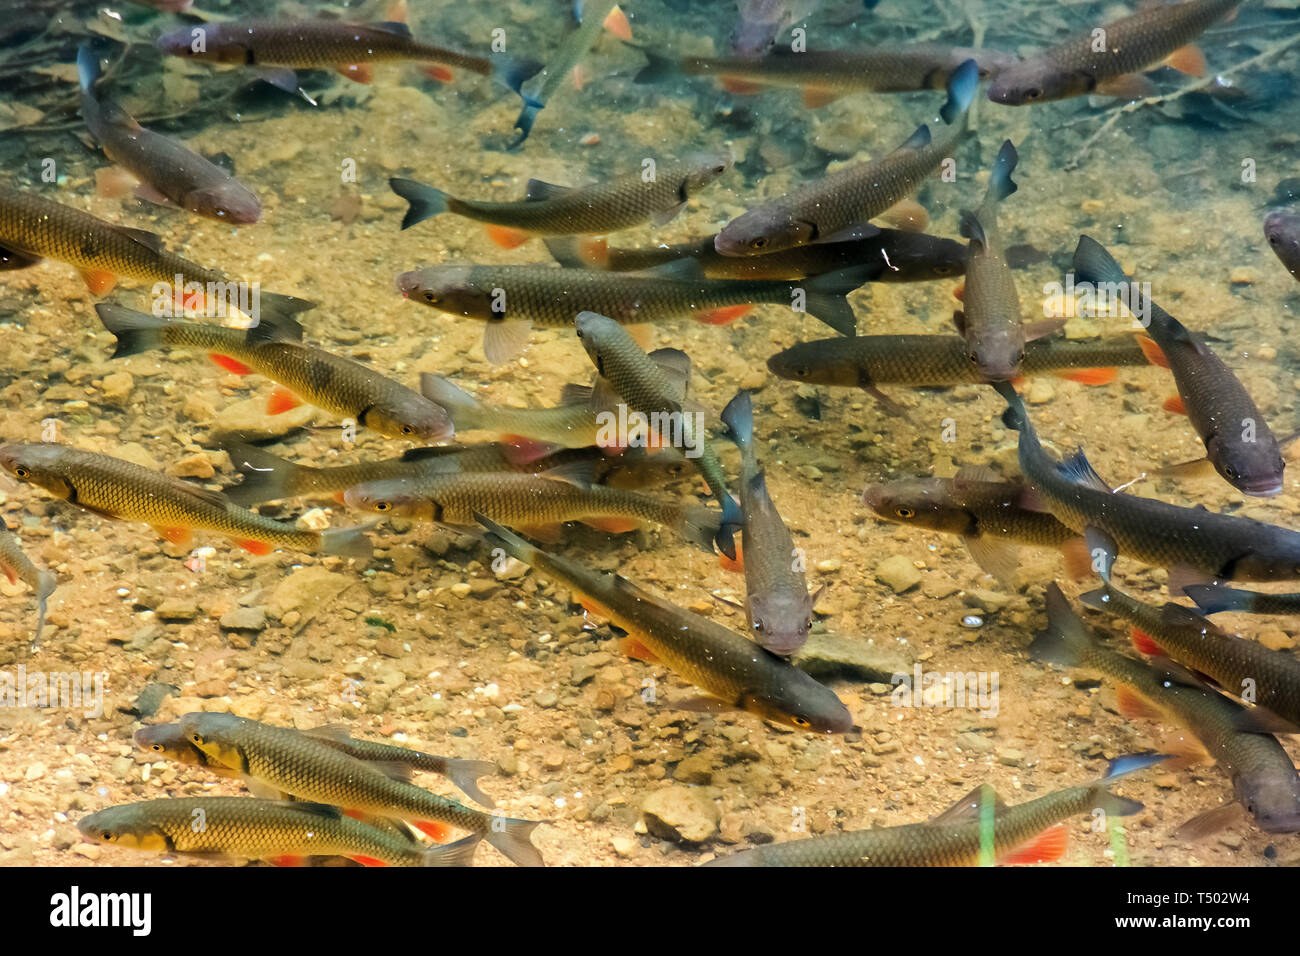 Forellen auf dem Boden des Sees. Viele Fische schwimmen frei im klaren  Wasser. Standort vihorlat See, Slowakei Stockfotografie - Alamy